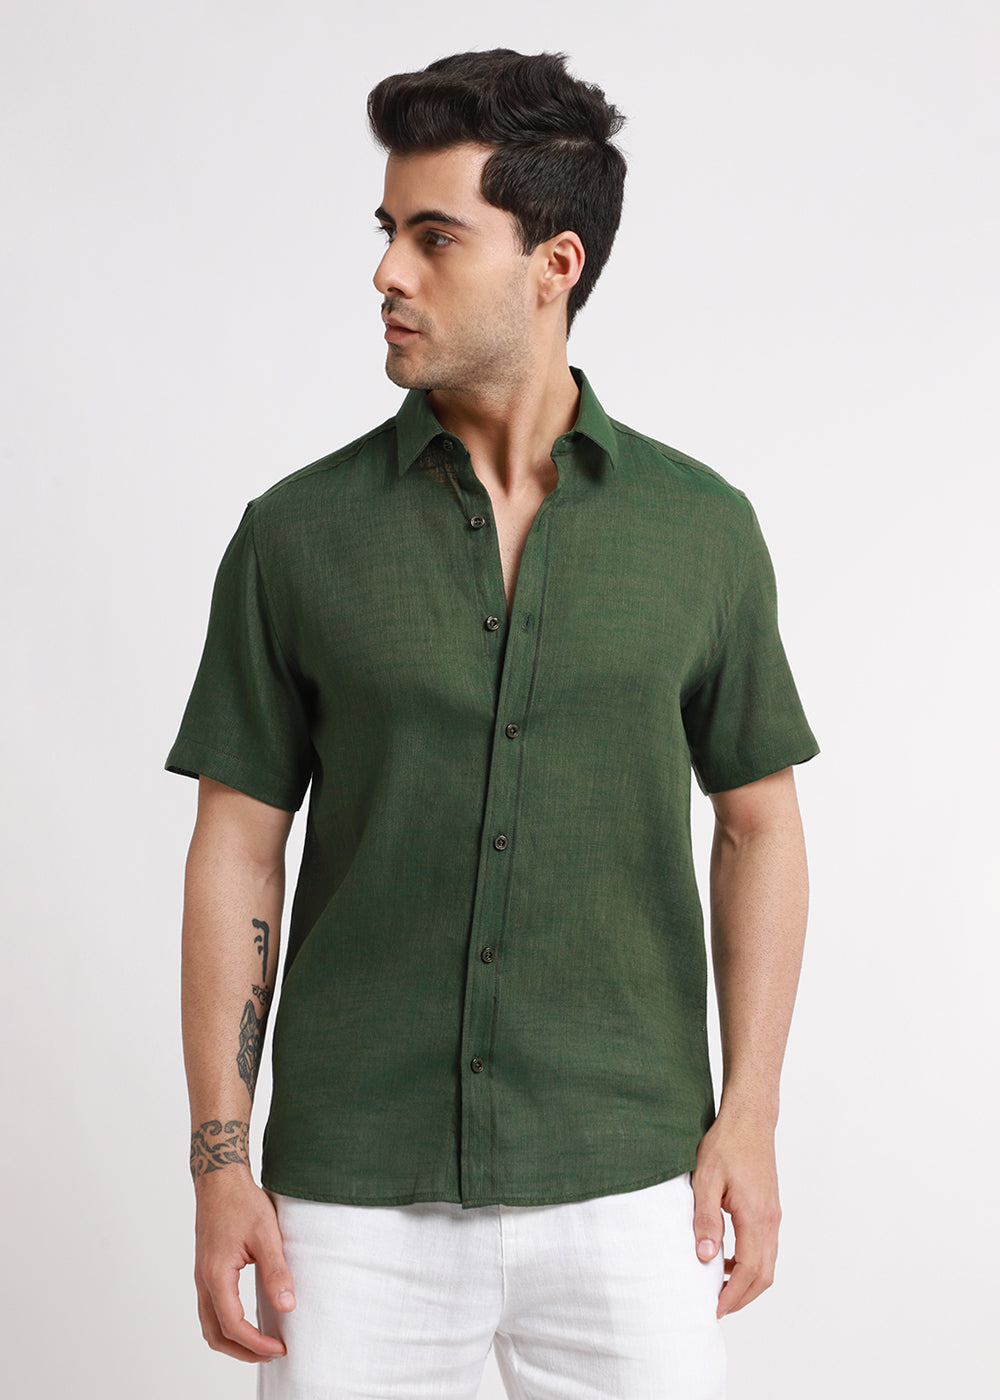 Get Batiste Green Linen shirt